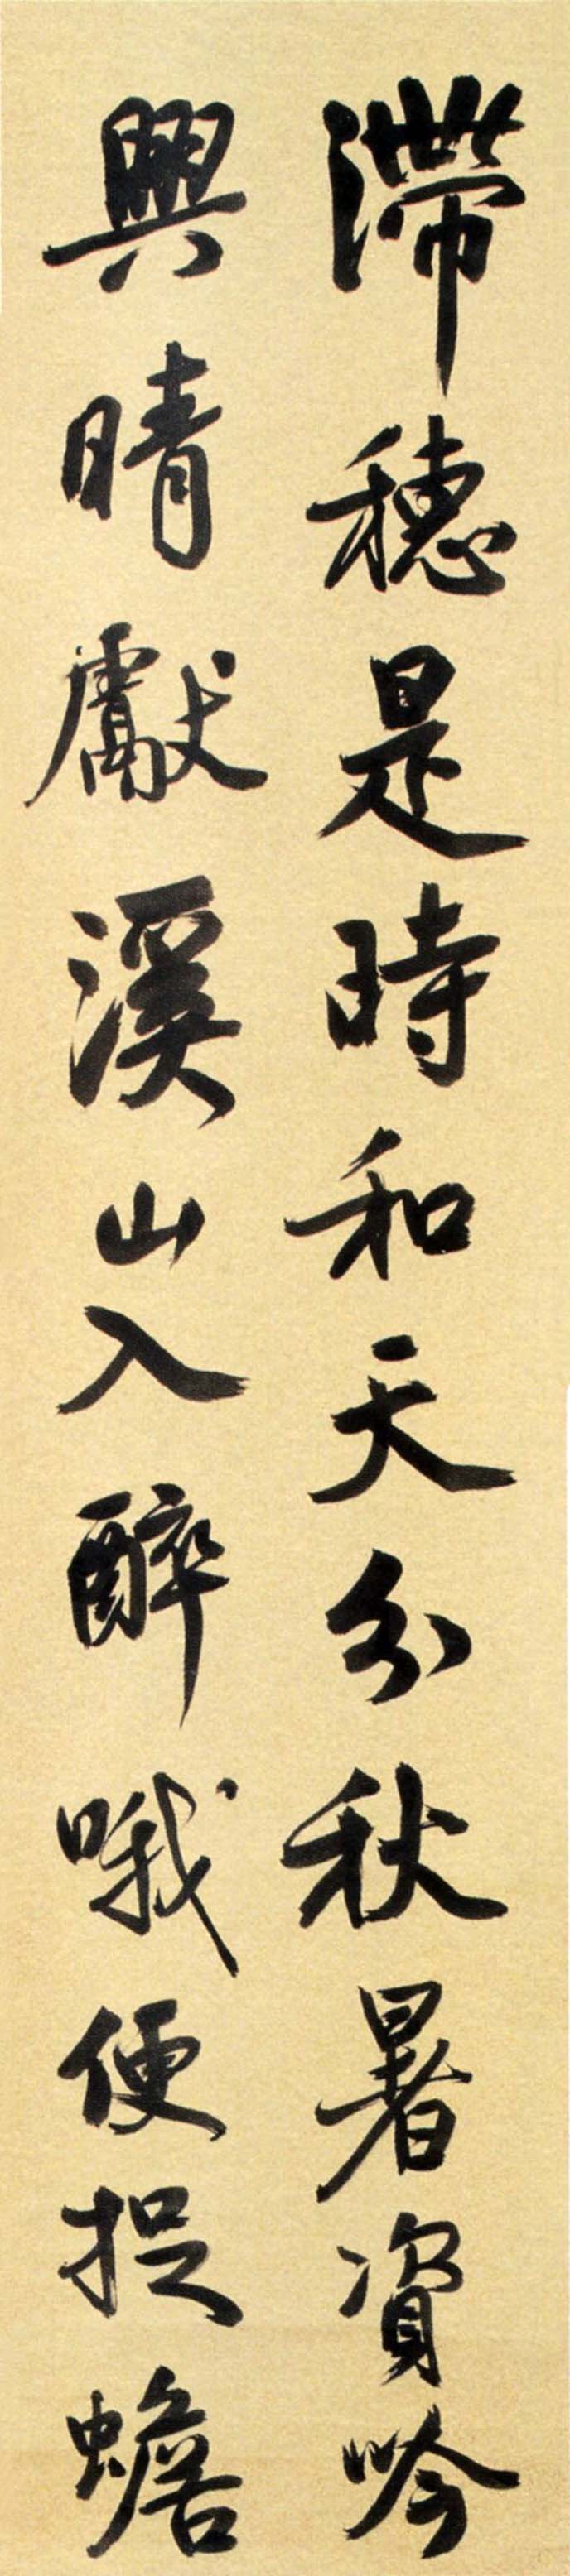 谭延闿《行书临米芾诗四条屏》-常州博物馆藏(图3)